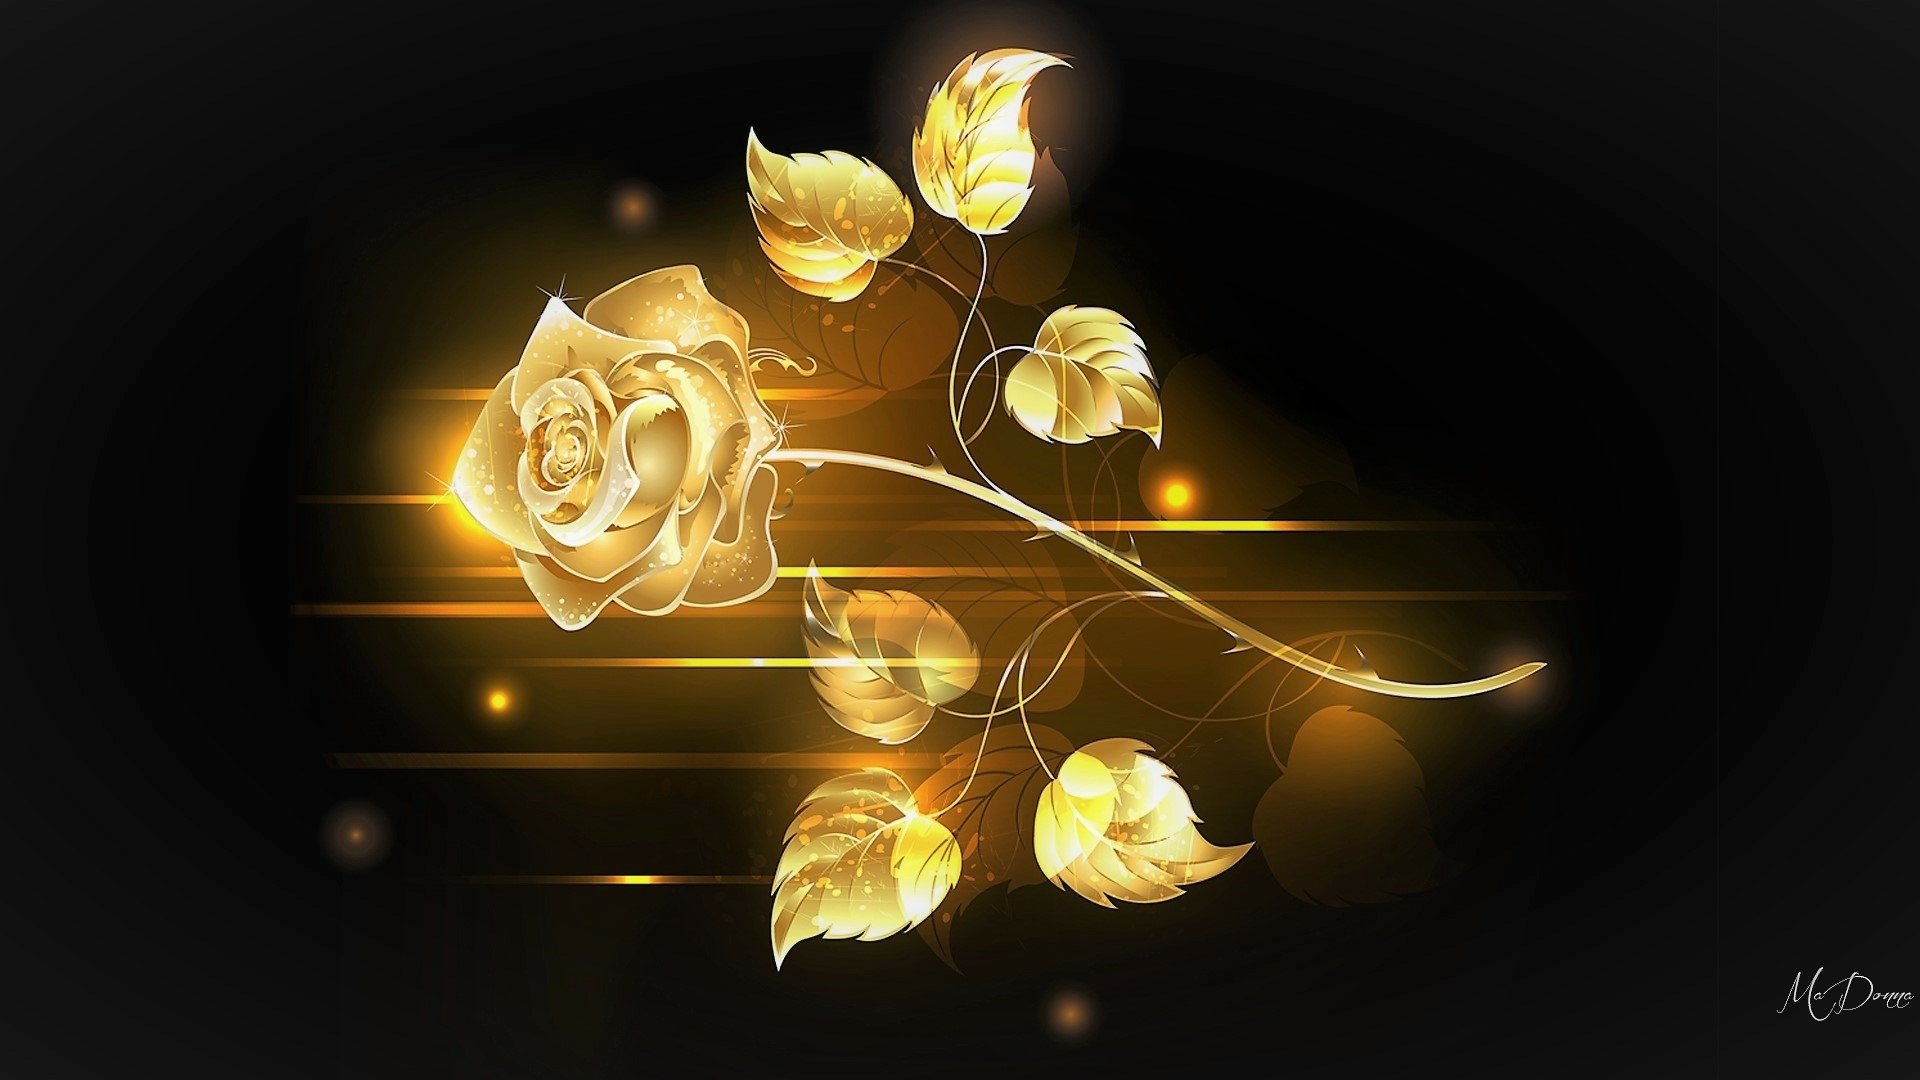 Golden Rose by MaDonna